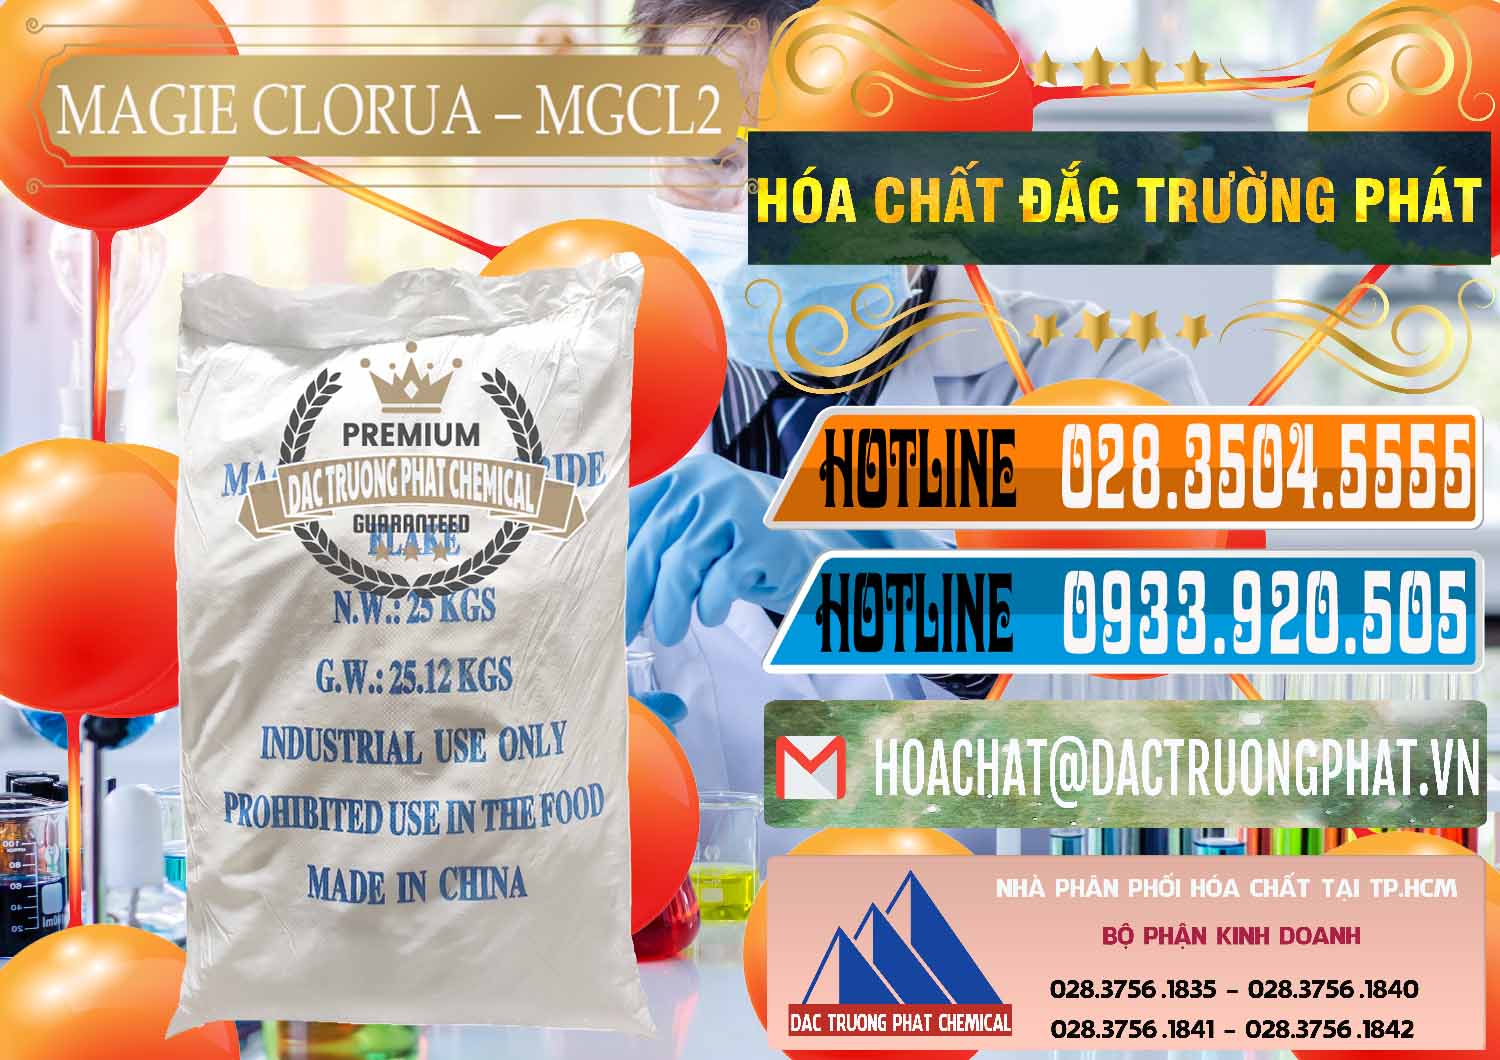 Nơi chuyên bán ( cung ứng ) Magie Clorua – MGCL2 96% Dạng Vảy Trung Quốc China - 0091 - Công ty nhập khẩu và cung cấp hóa chất tại TP.HCM - stmp.net